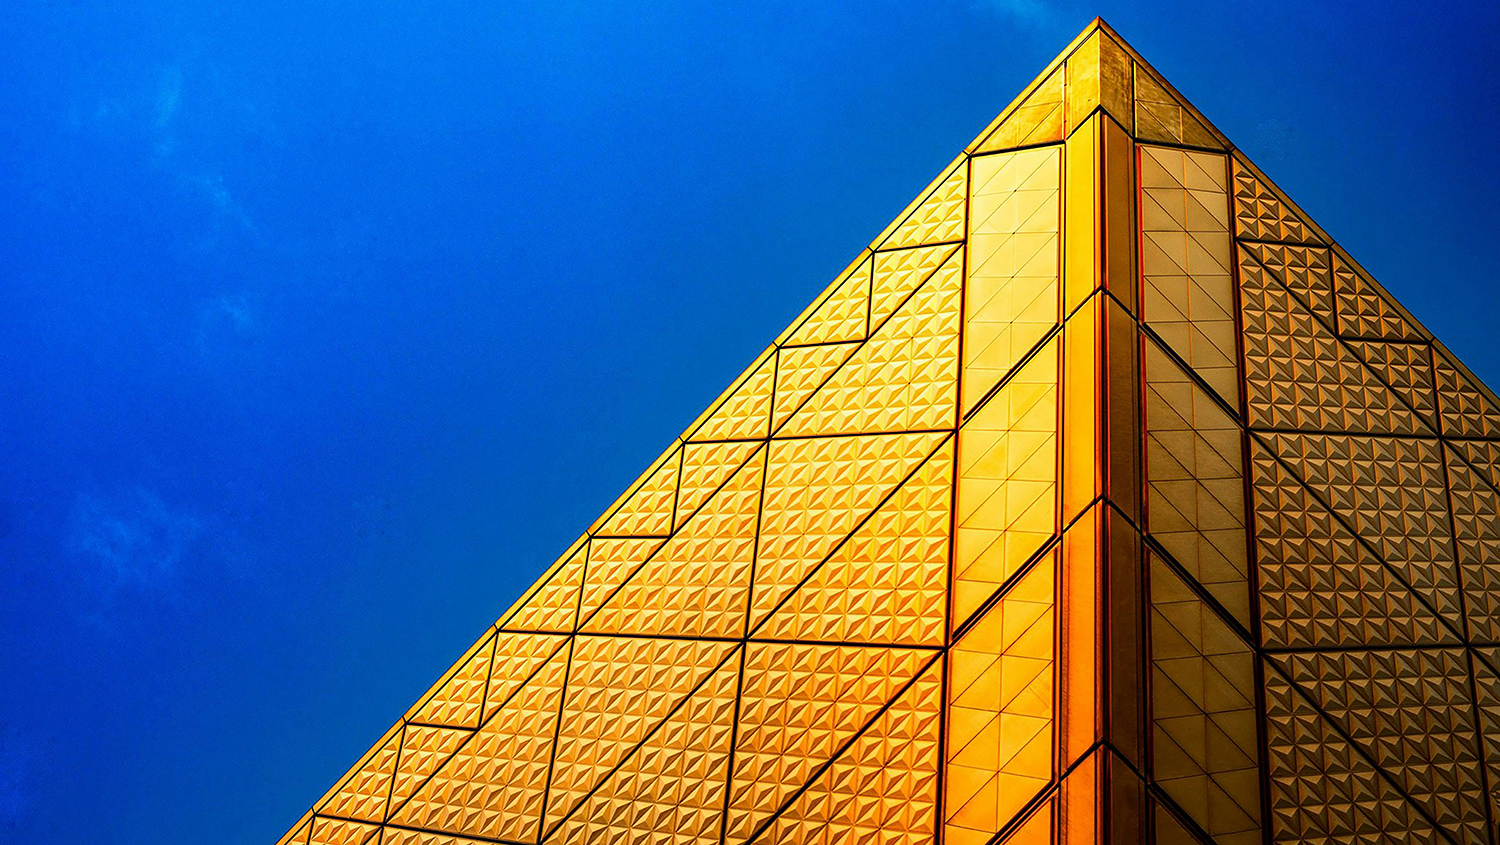 Gyllene pyramidformad byggnad mot blå himmel.